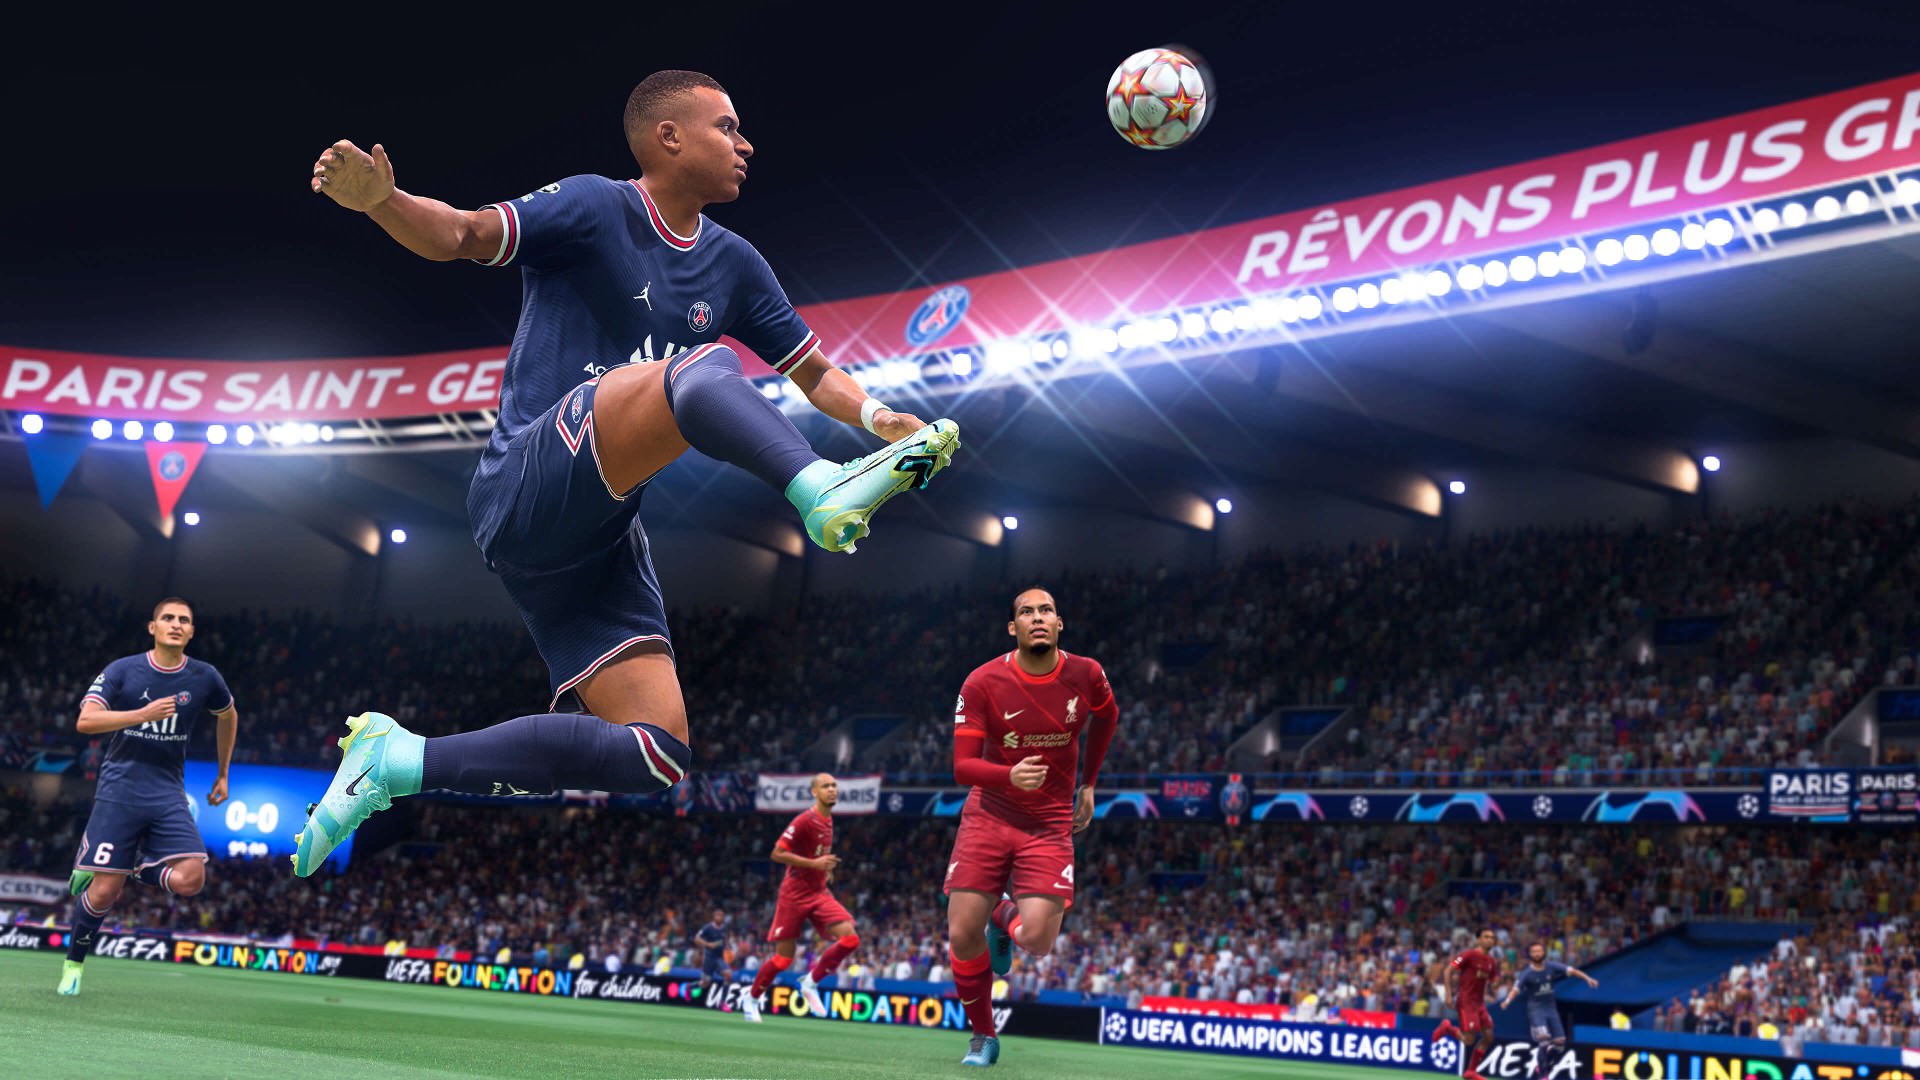 جدول فروش هفتگی انگلستان: صدرنشینی بازی FIFA 22 در هفته عرضه هیلو